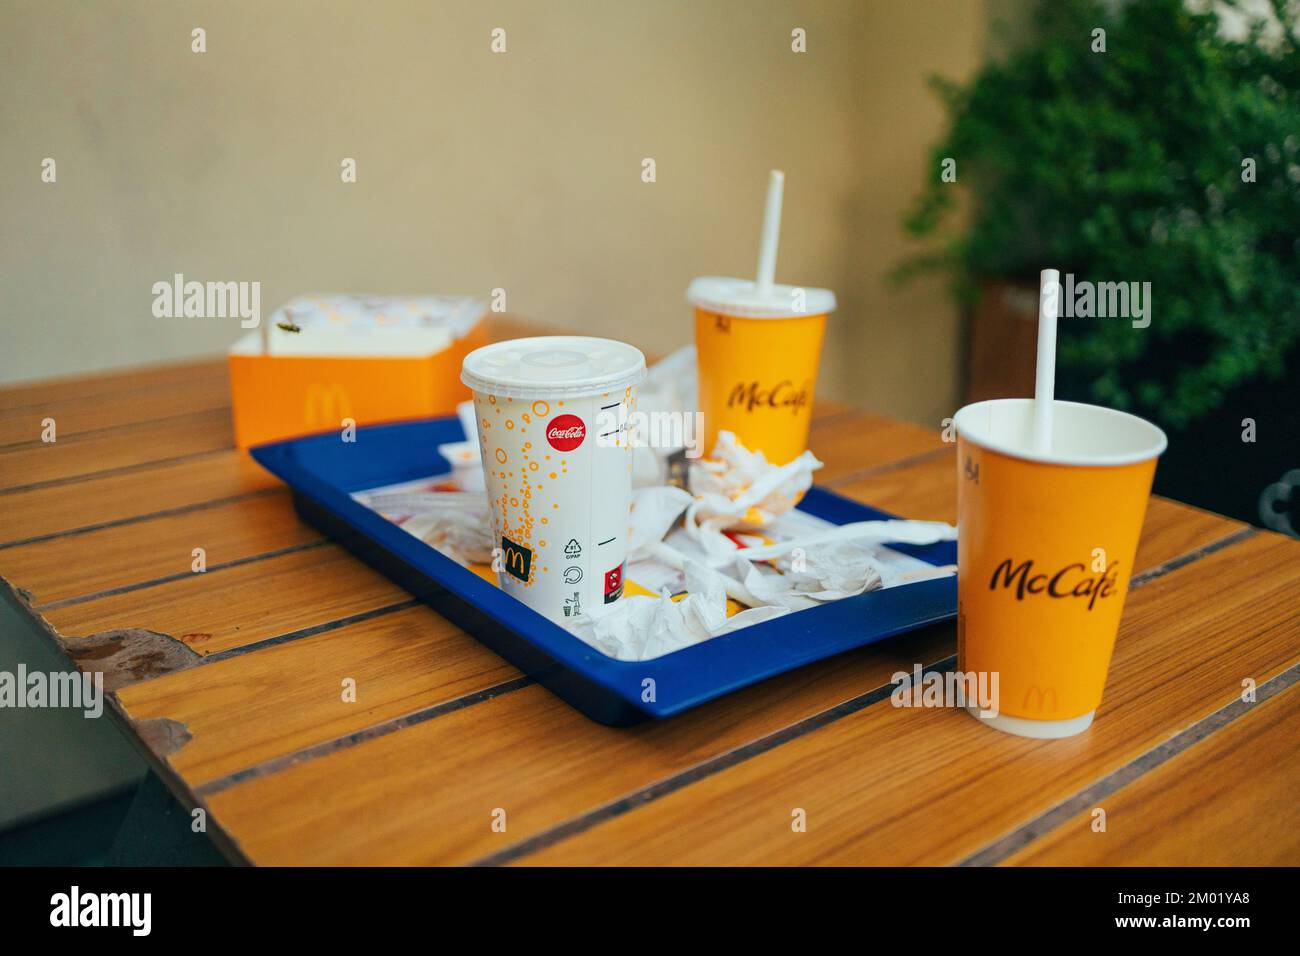 Krakau, Polen - 25. August 2022: Linkes Tablett im McDonald's-Restaurant. McDonald's ist eine amerikanische Hamburger- und Fast-Food-Restaurantkette. Stockfoto